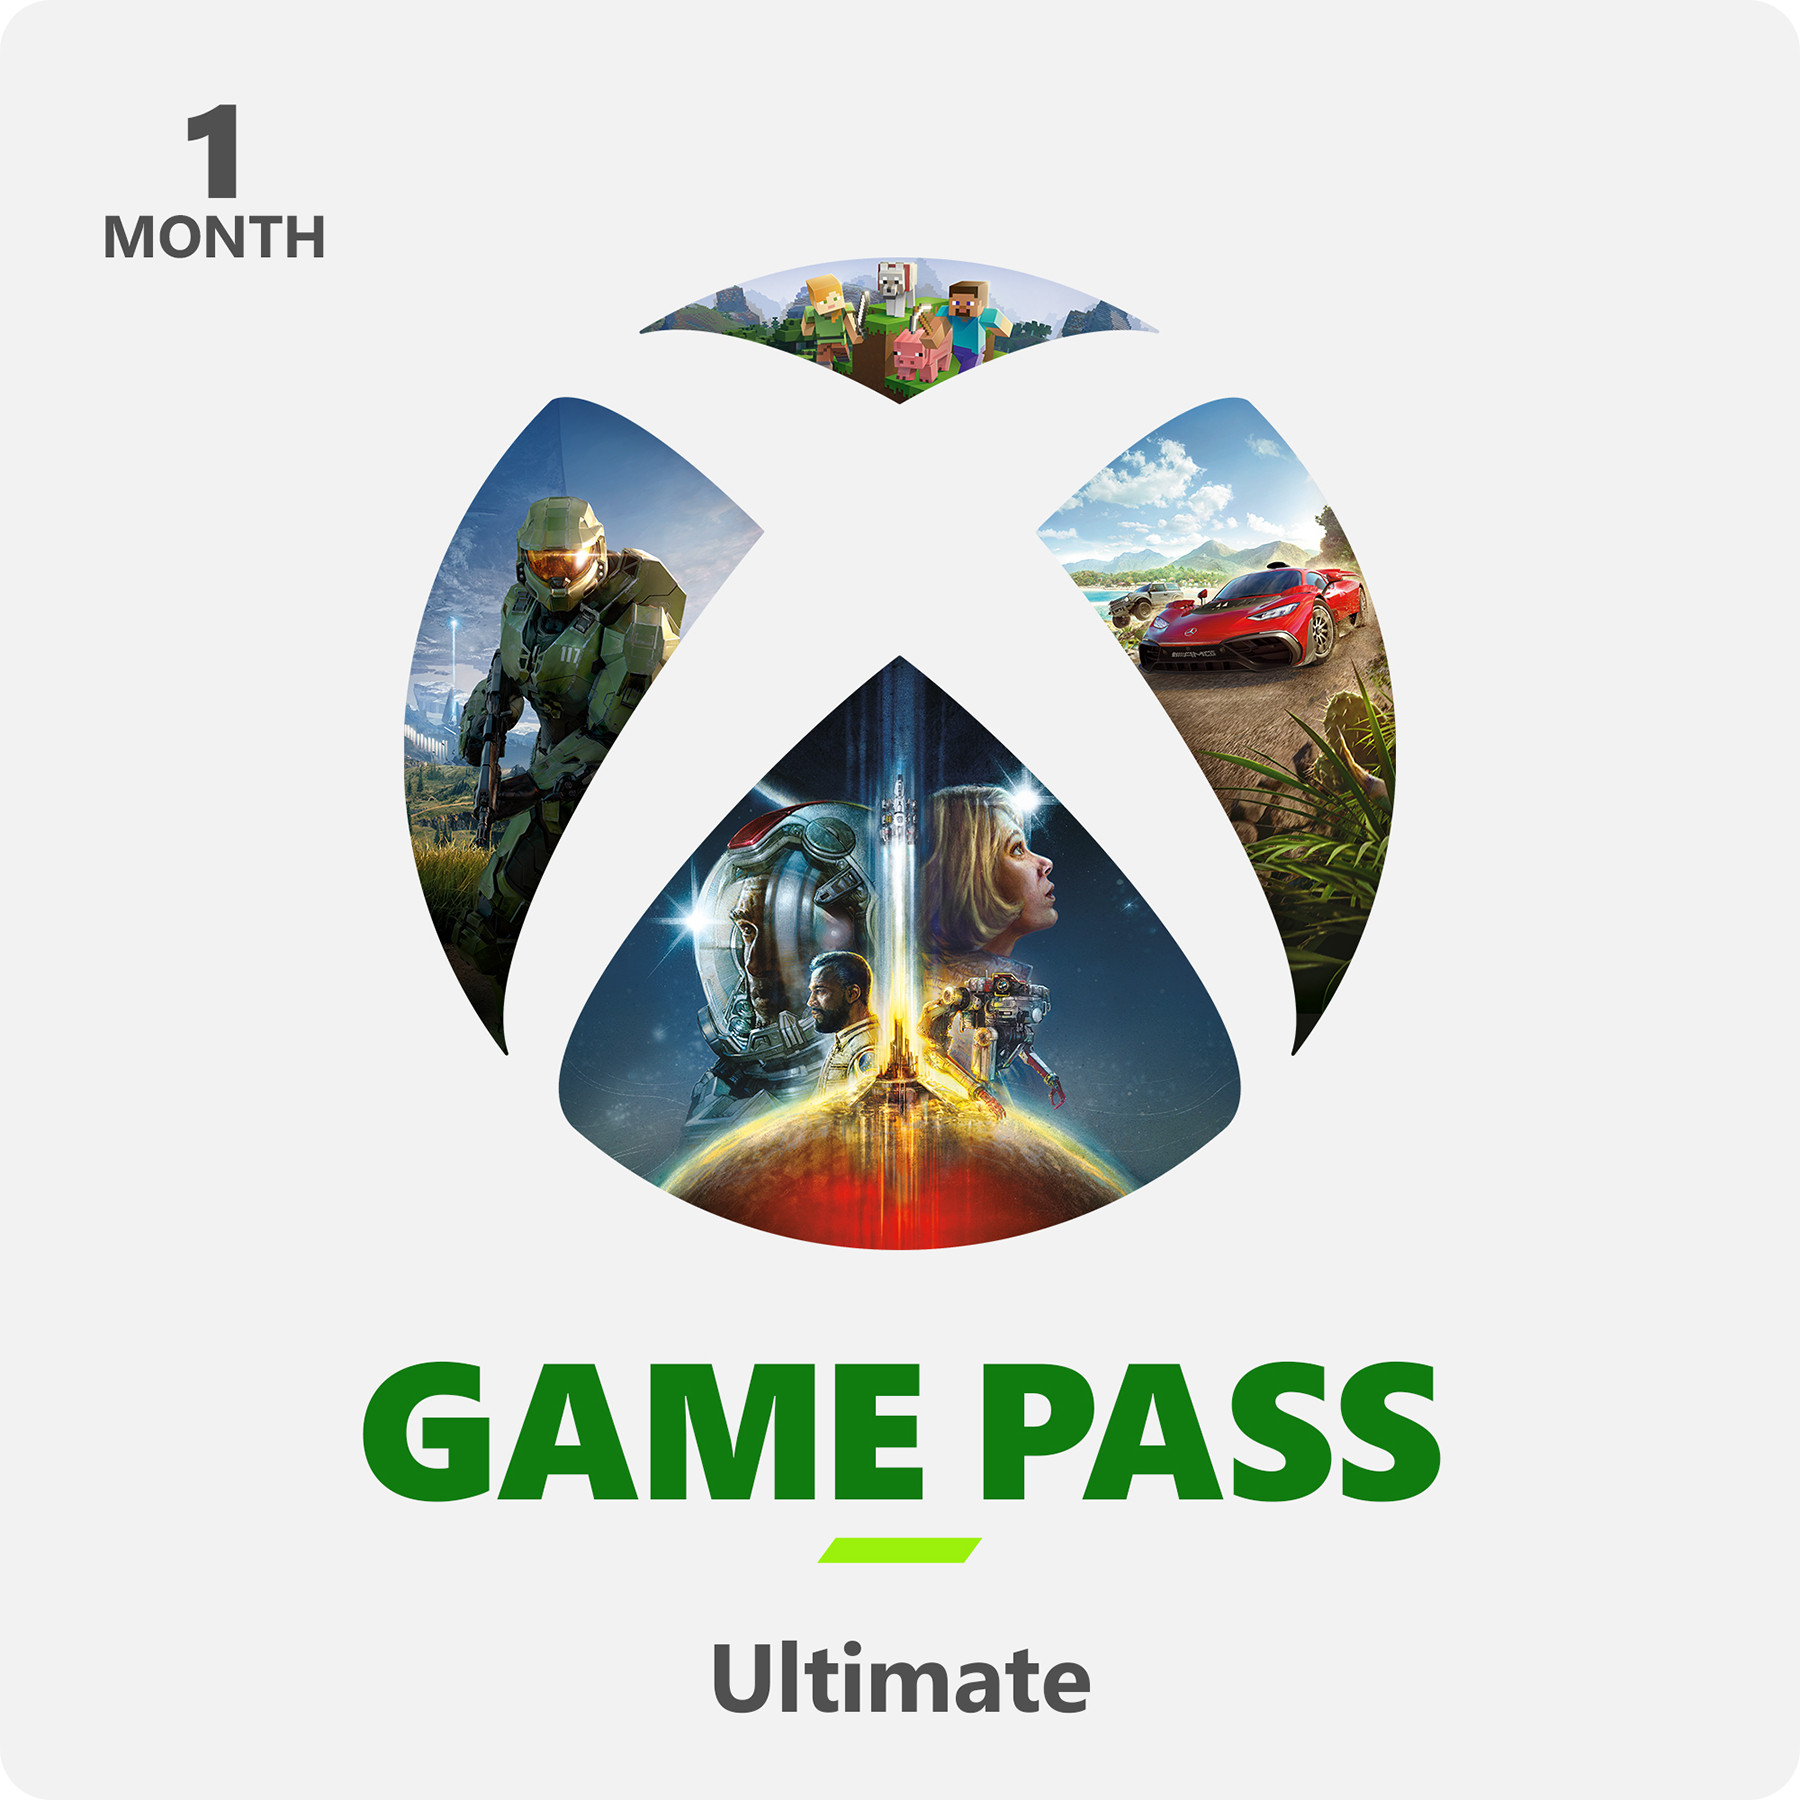 Draaien stropdas Tol Nedgame gameshop: Xbox Live Game Pass Ultimate Online - 1 Maand (PC Gaming)  kopen